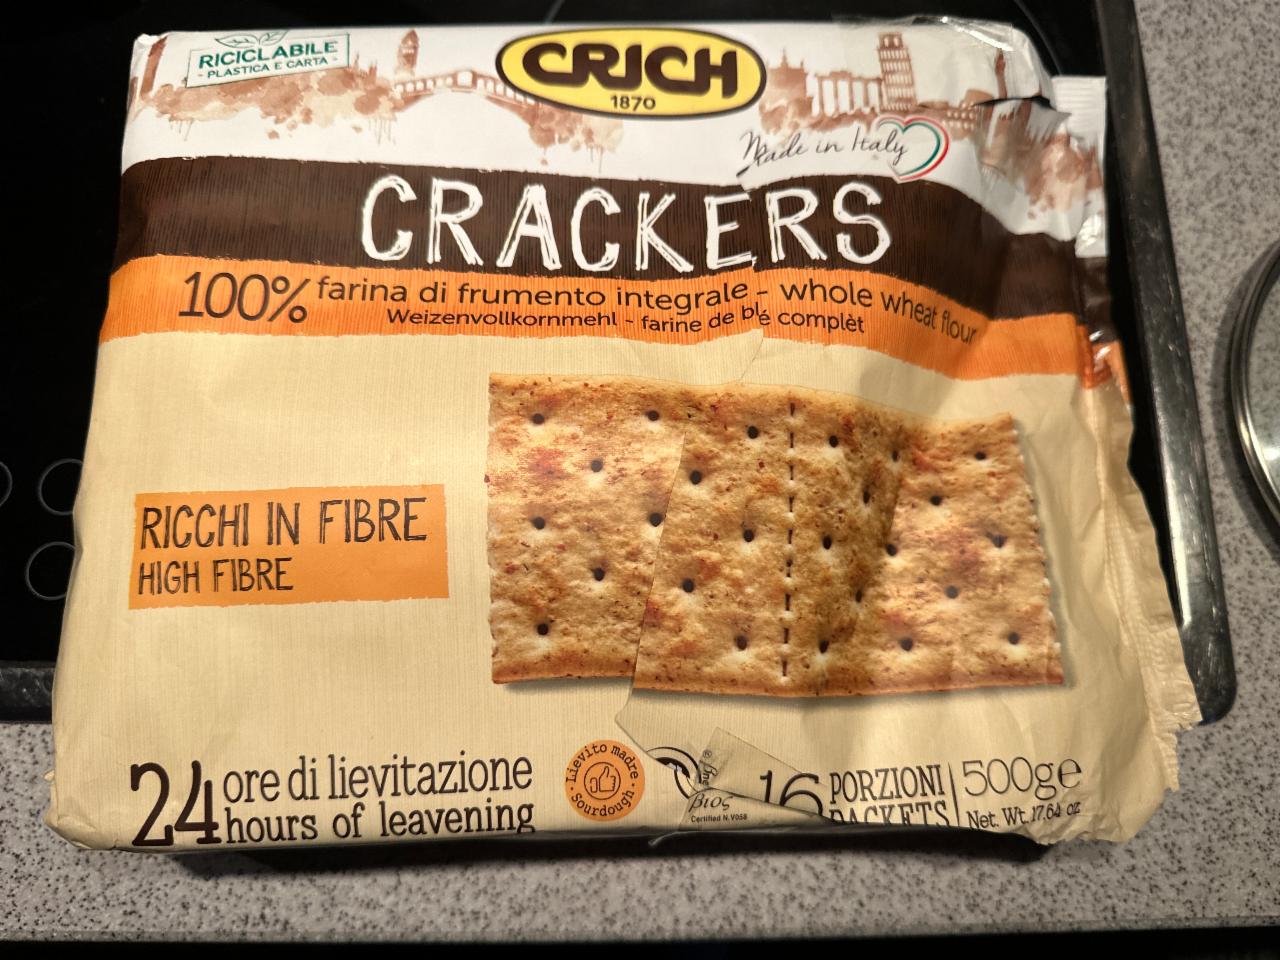 Фото - Крекеры из цельной пшеницы Crackers Crich